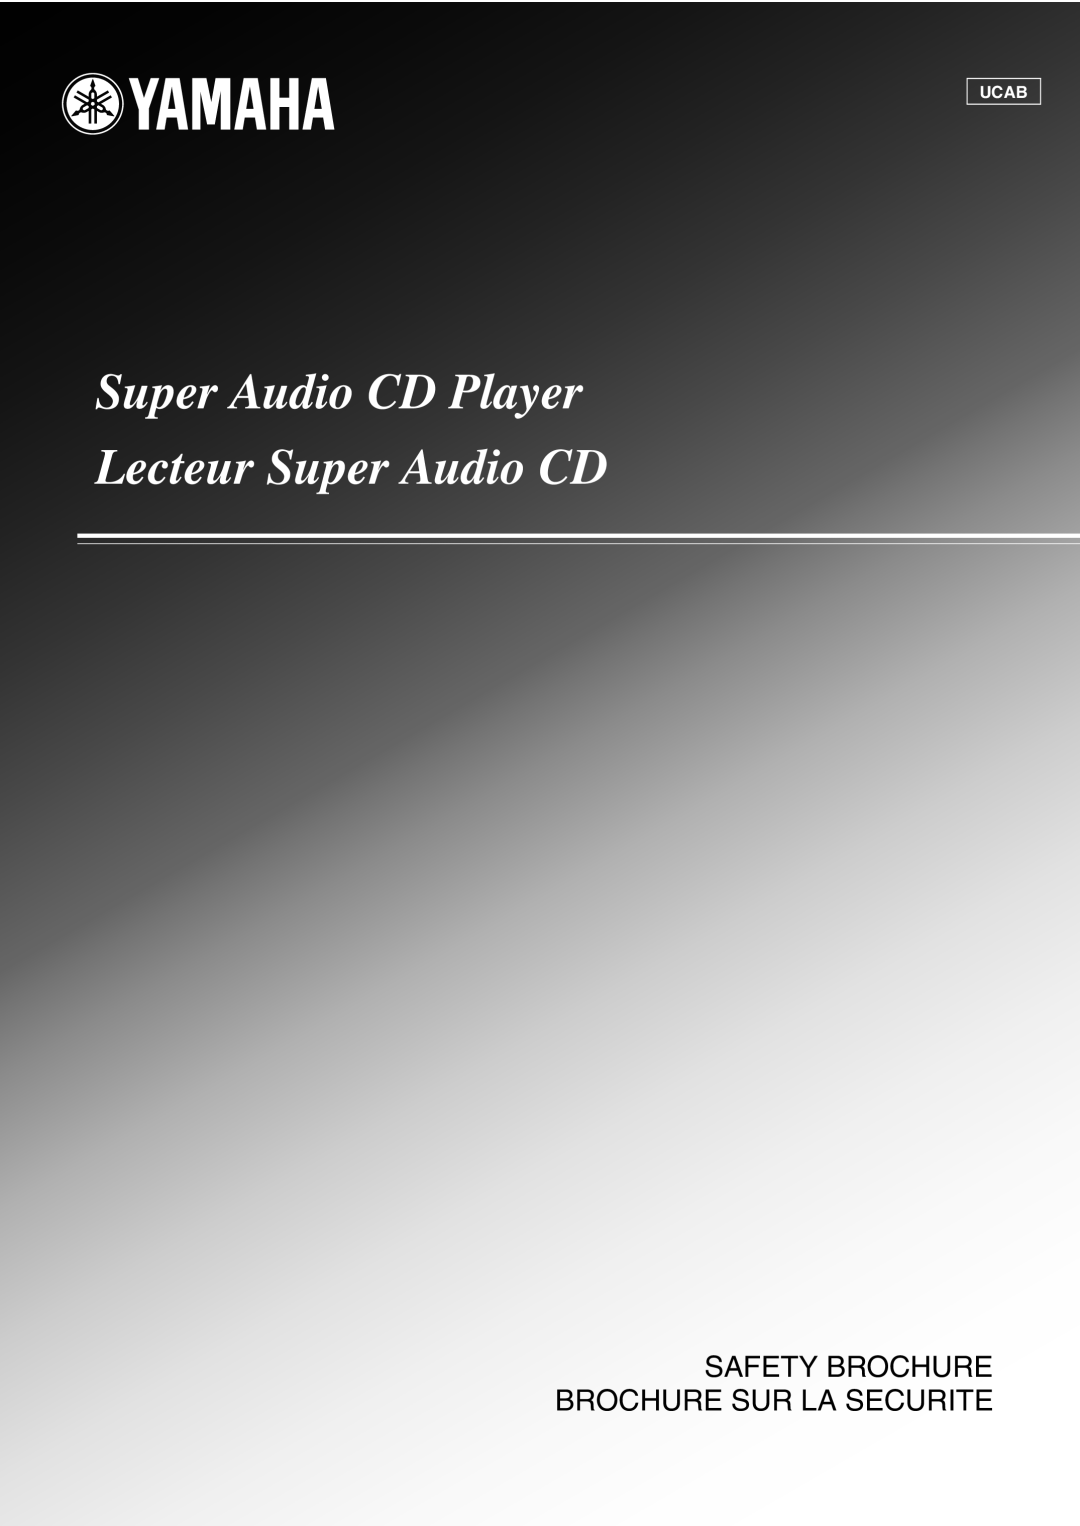 Yamaha CD-S1000 owner manual Super Audio CD Player Lecteur Super Audio CD, Safety Brochure Brochure Sur La Securite, Ucab 